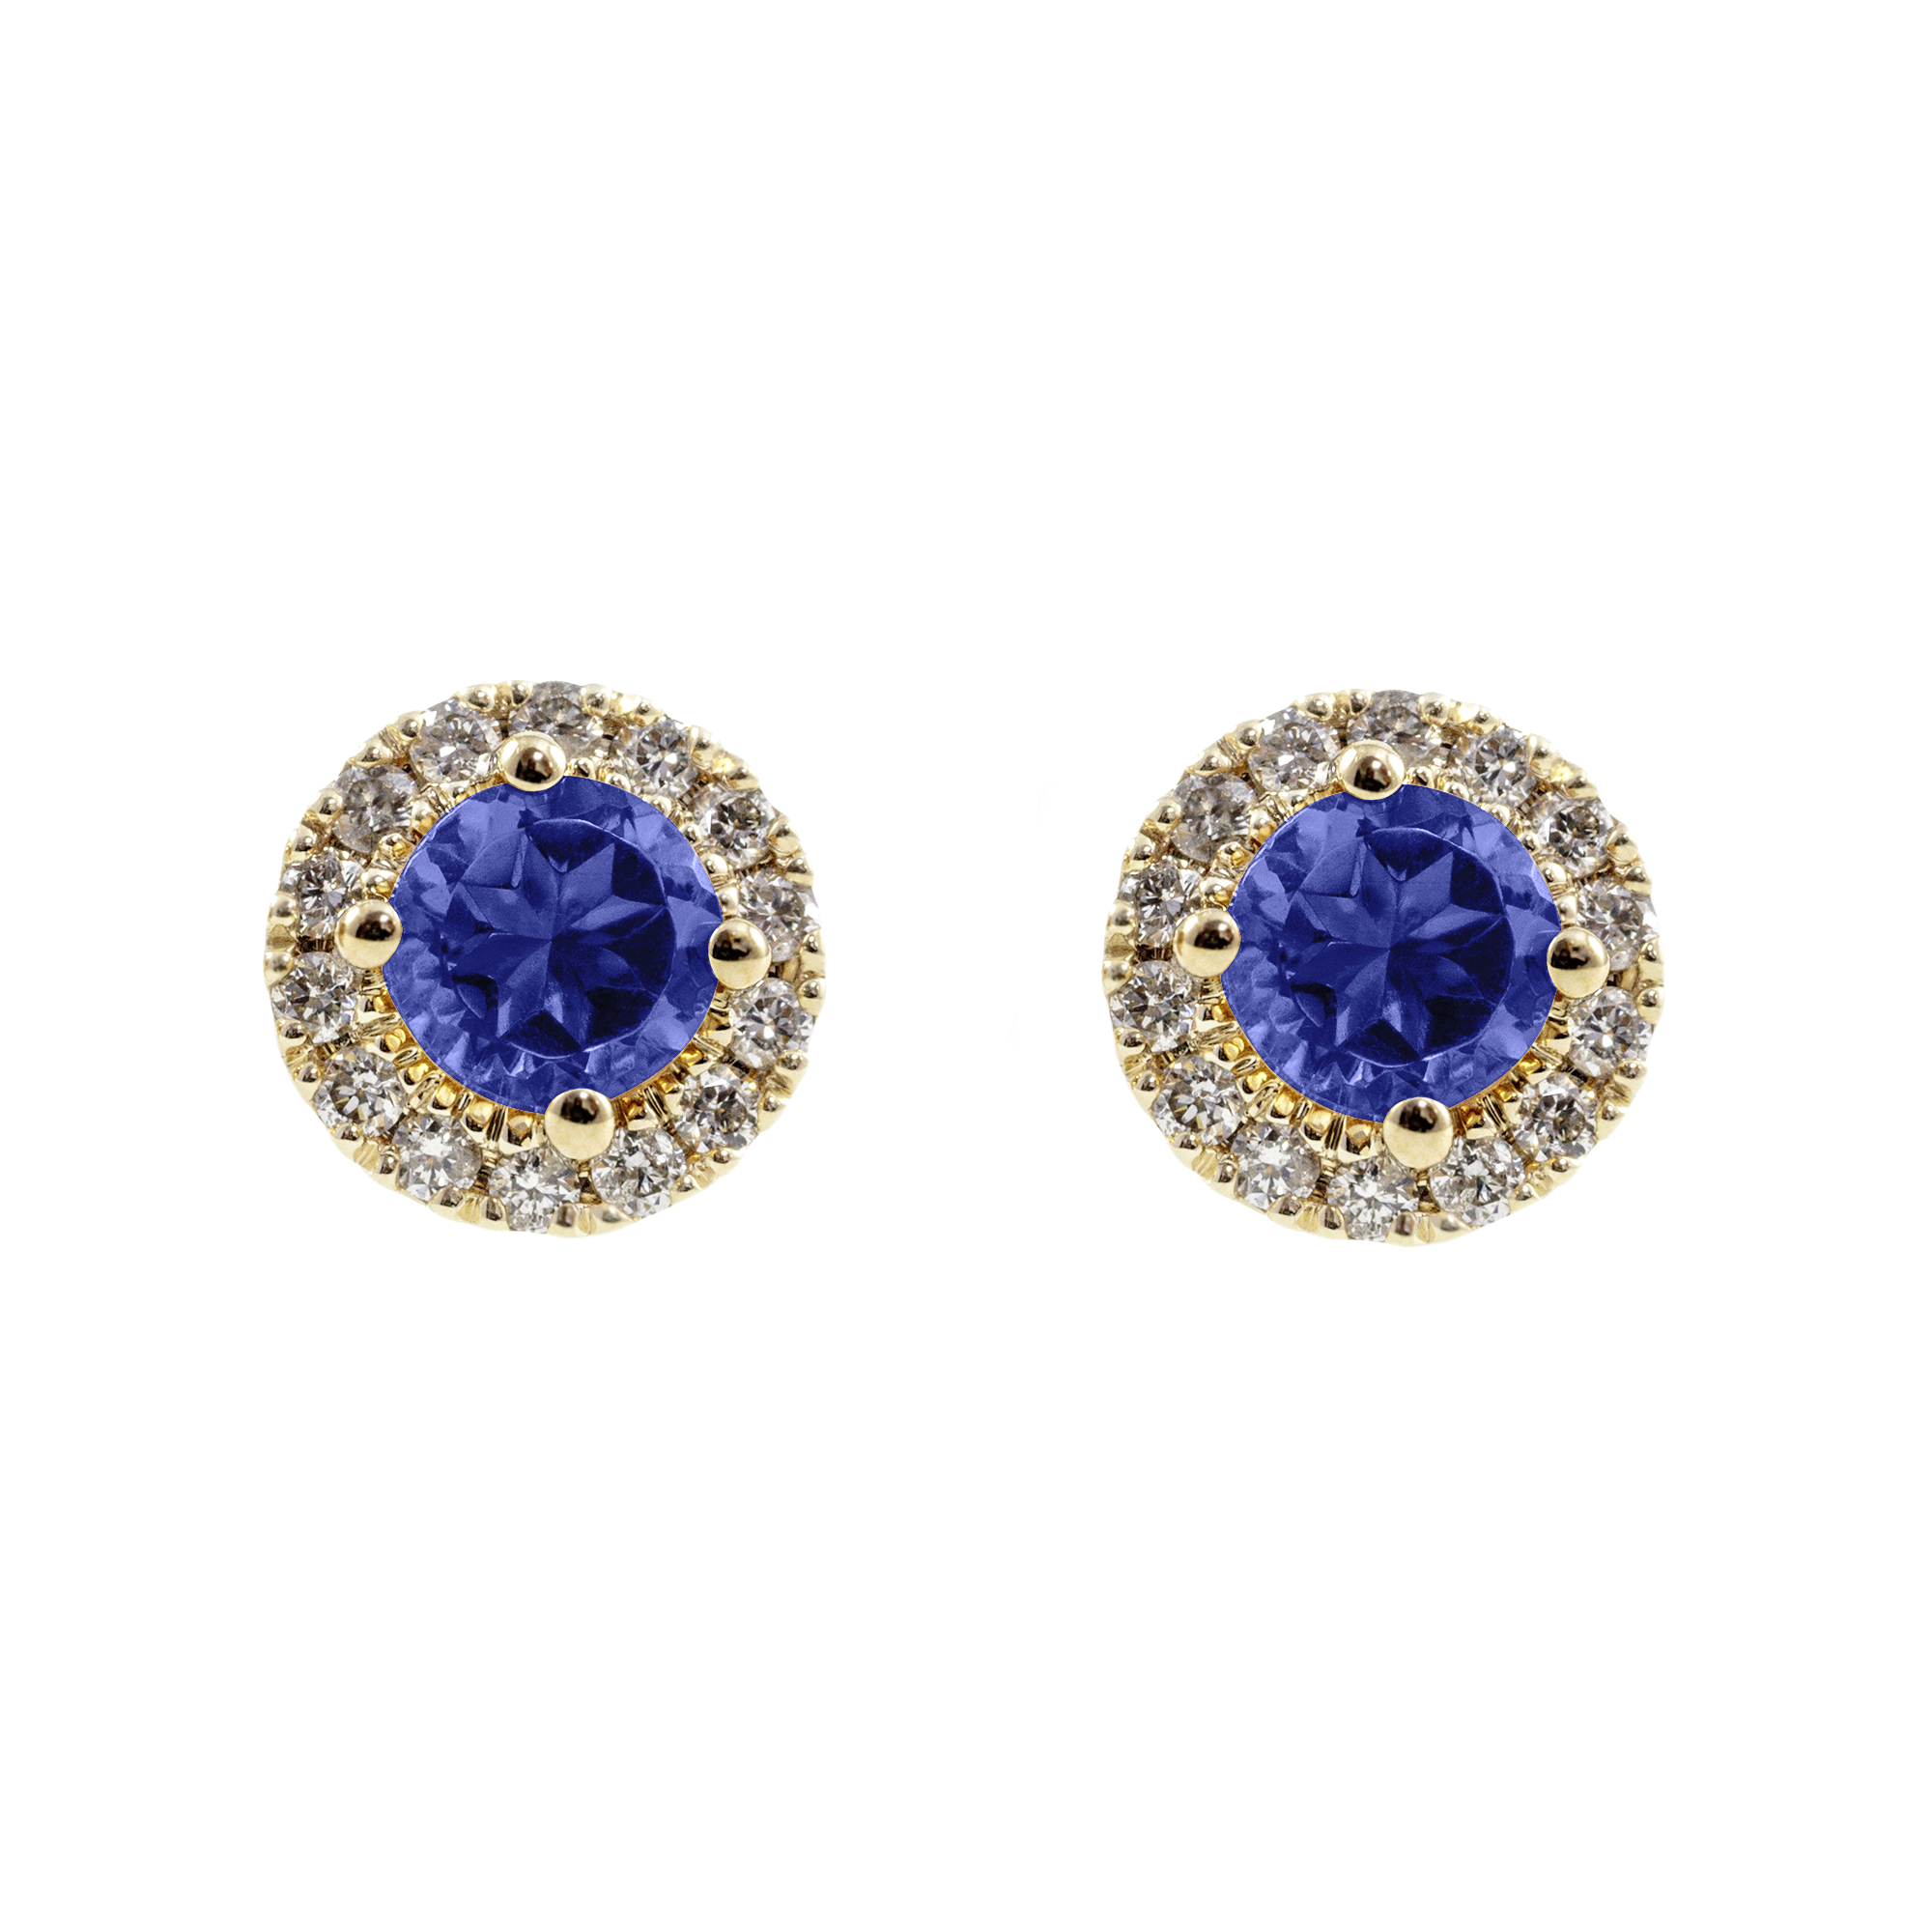 Personalized Diamond Rosette Earrings